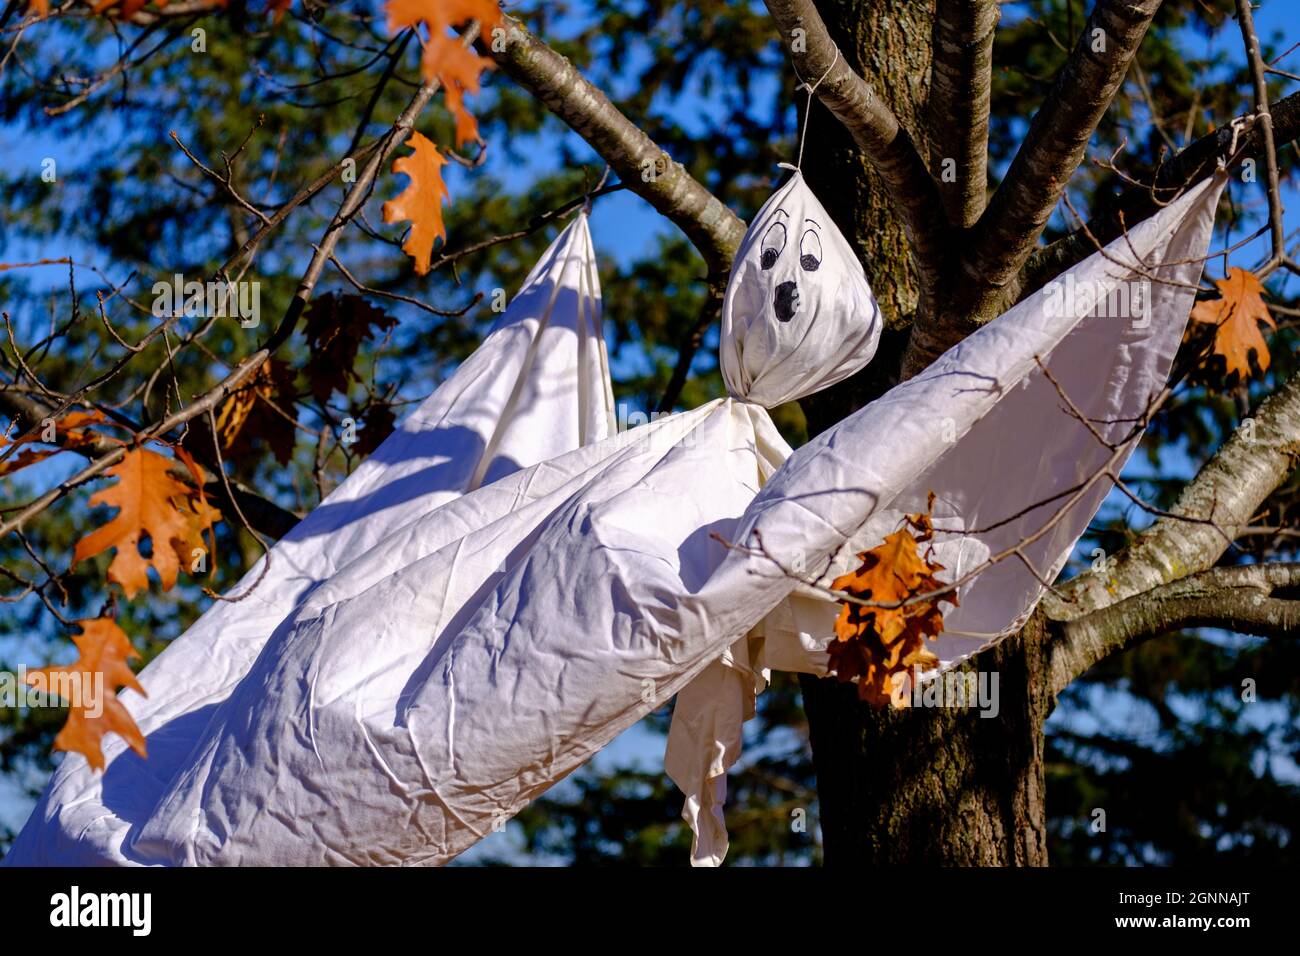 Un foglio bianco è stato fatto in una decorazione fantasma per Halloween. È appeso in un albero di quercia con foglie autunnali, soffiato nel vento. Foto Stock